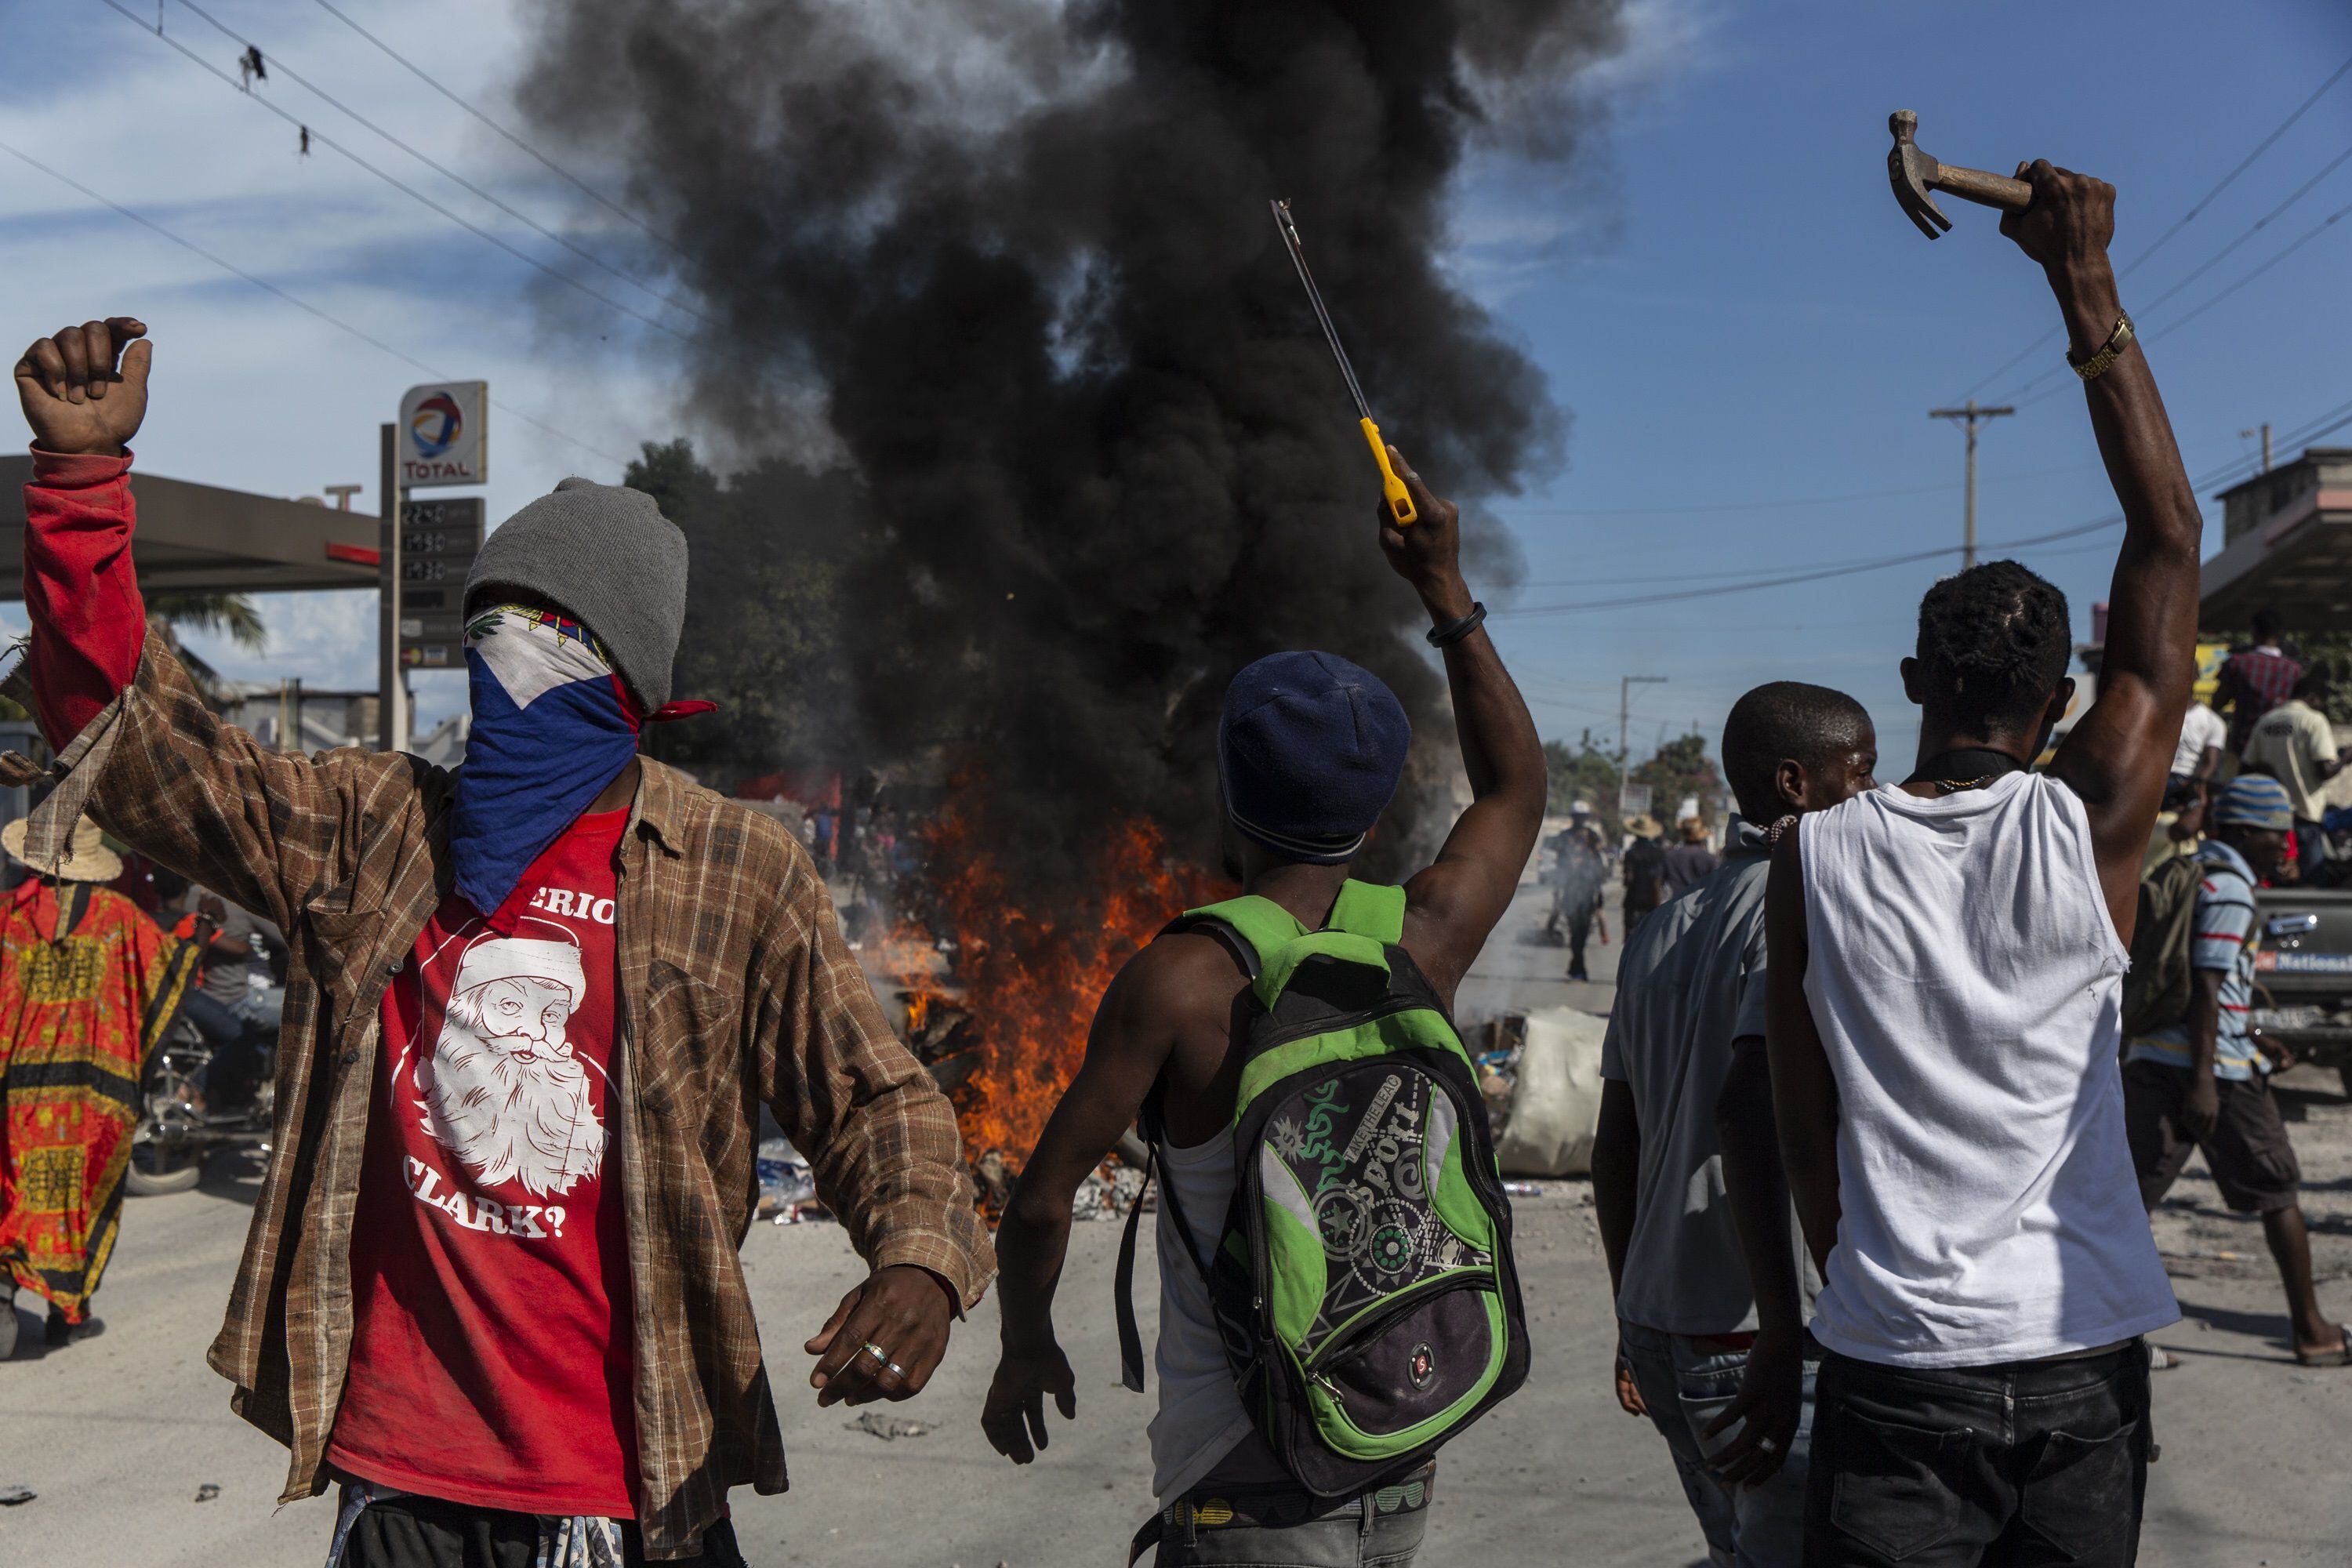 Las protestas y los grupos armados con cualquier tipo de elemento son cotidianos (ZUMA PRESS / CONTACTOPHOTO / Archivo)
